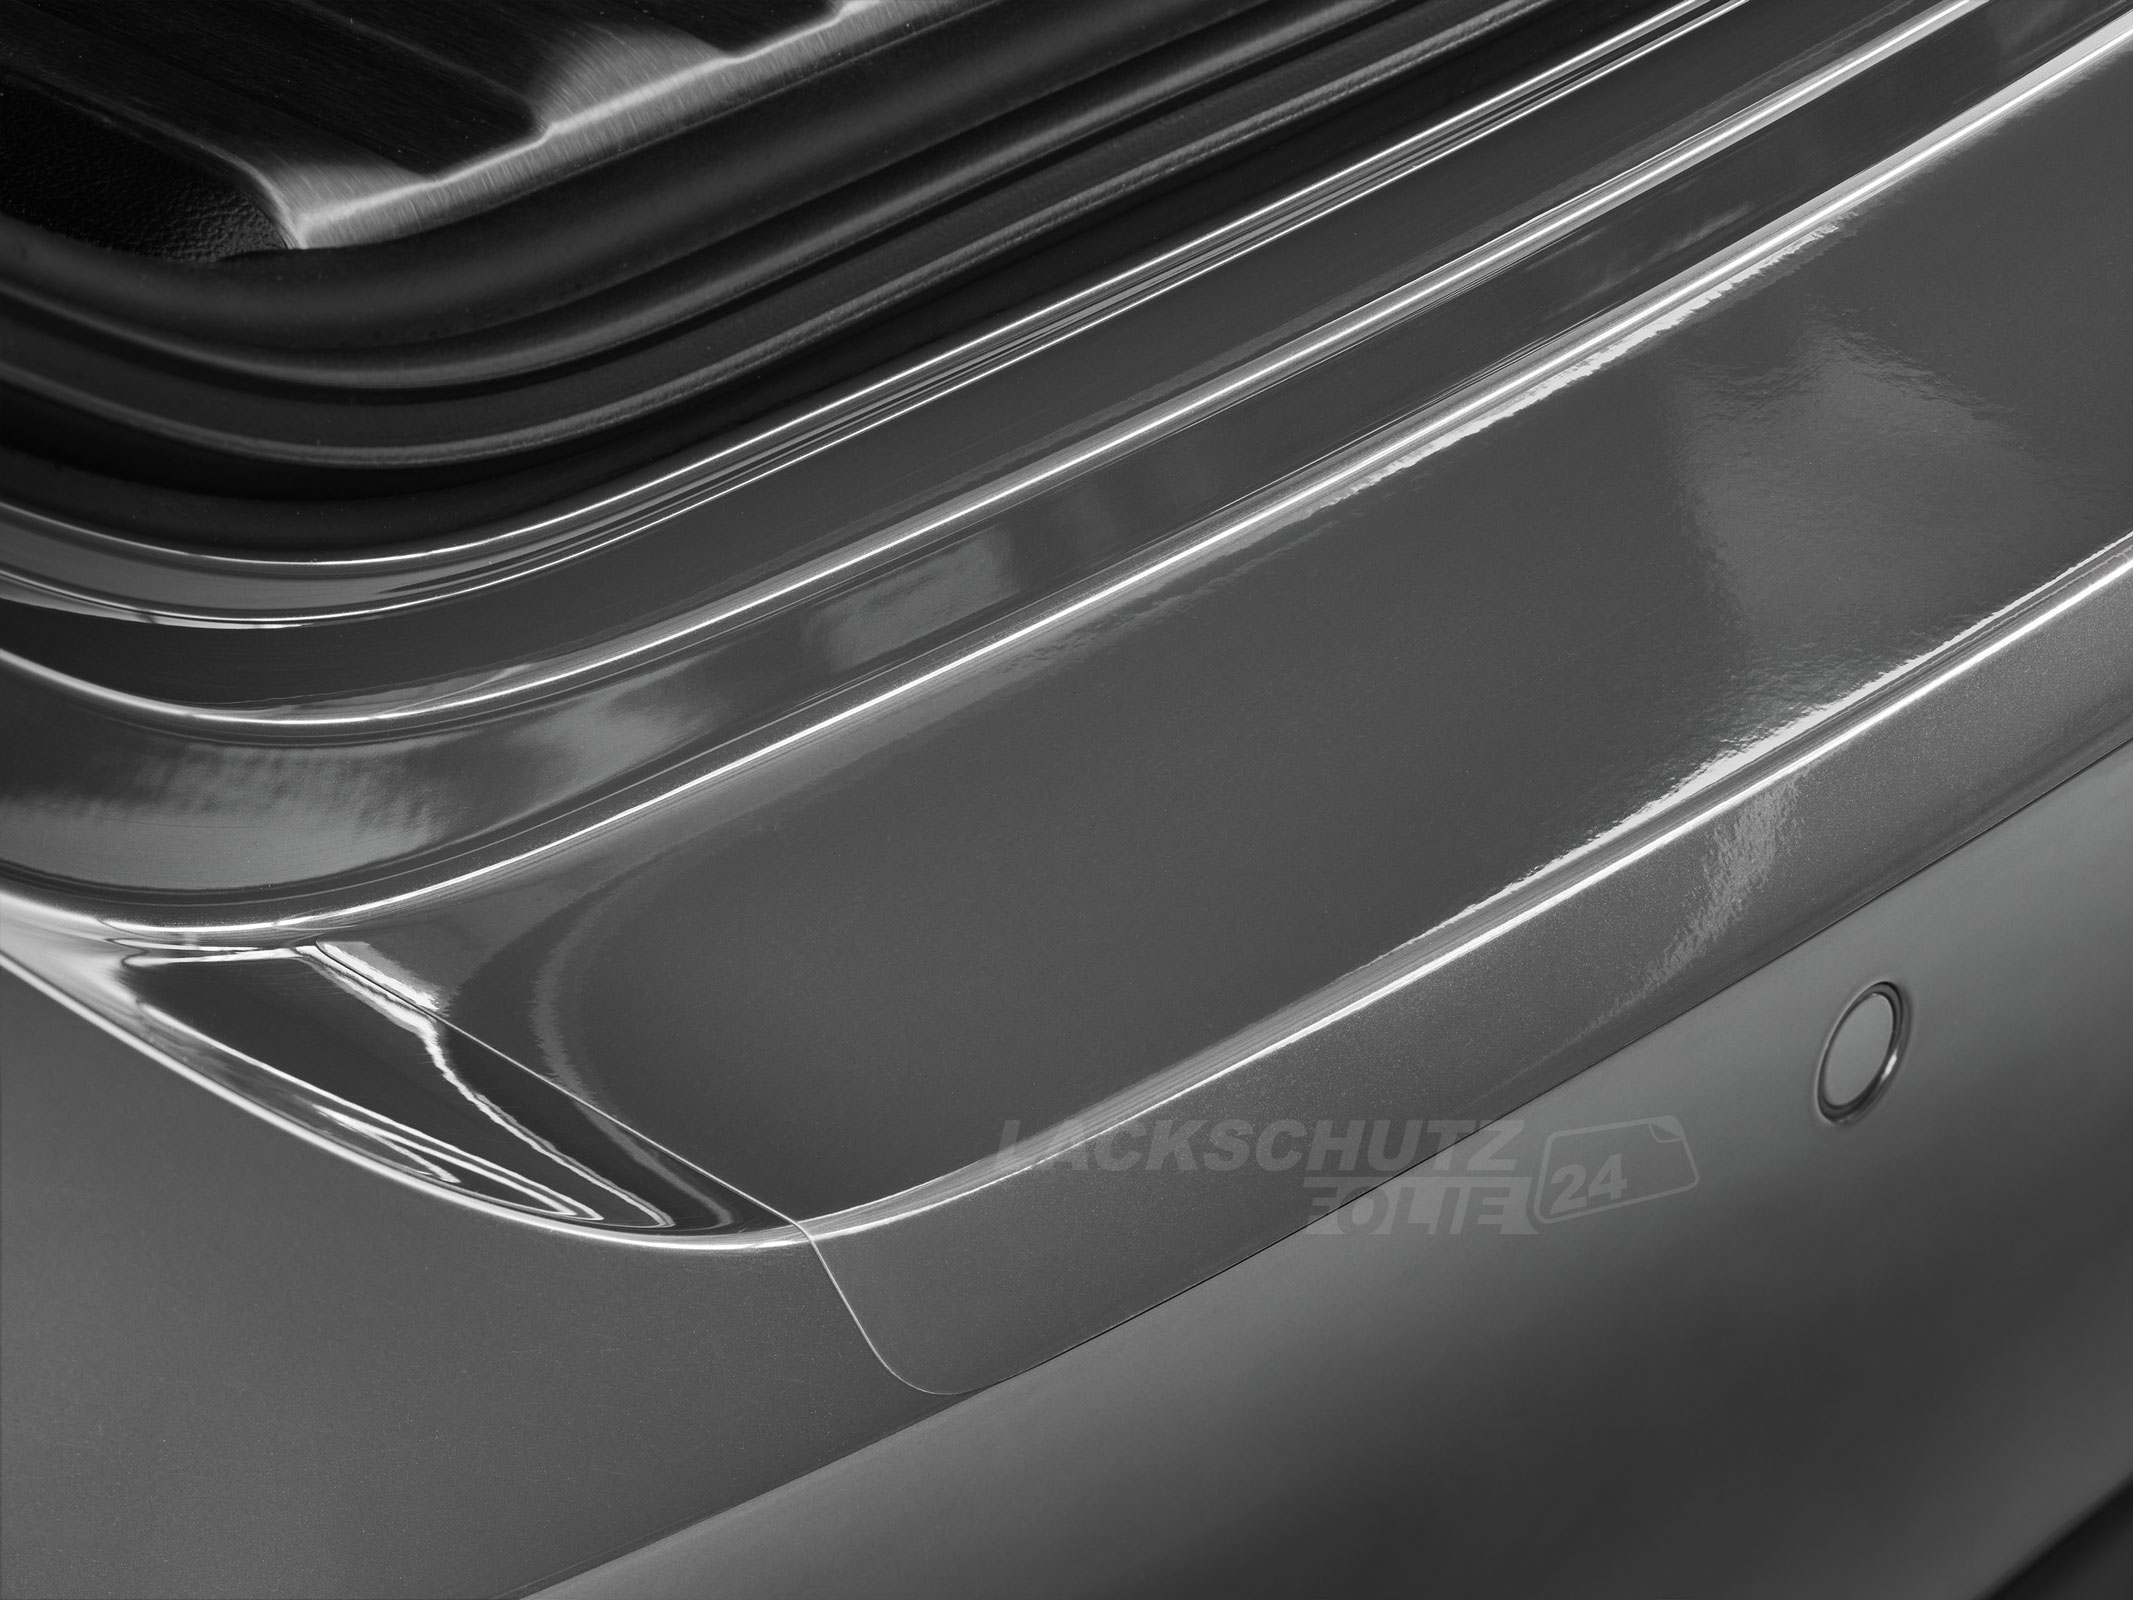 Ladekantenschutzfolie - Transparent Glatt Hochglänzend für BMW 3er Cabrio Typ E93, BJ 2007-10/2014